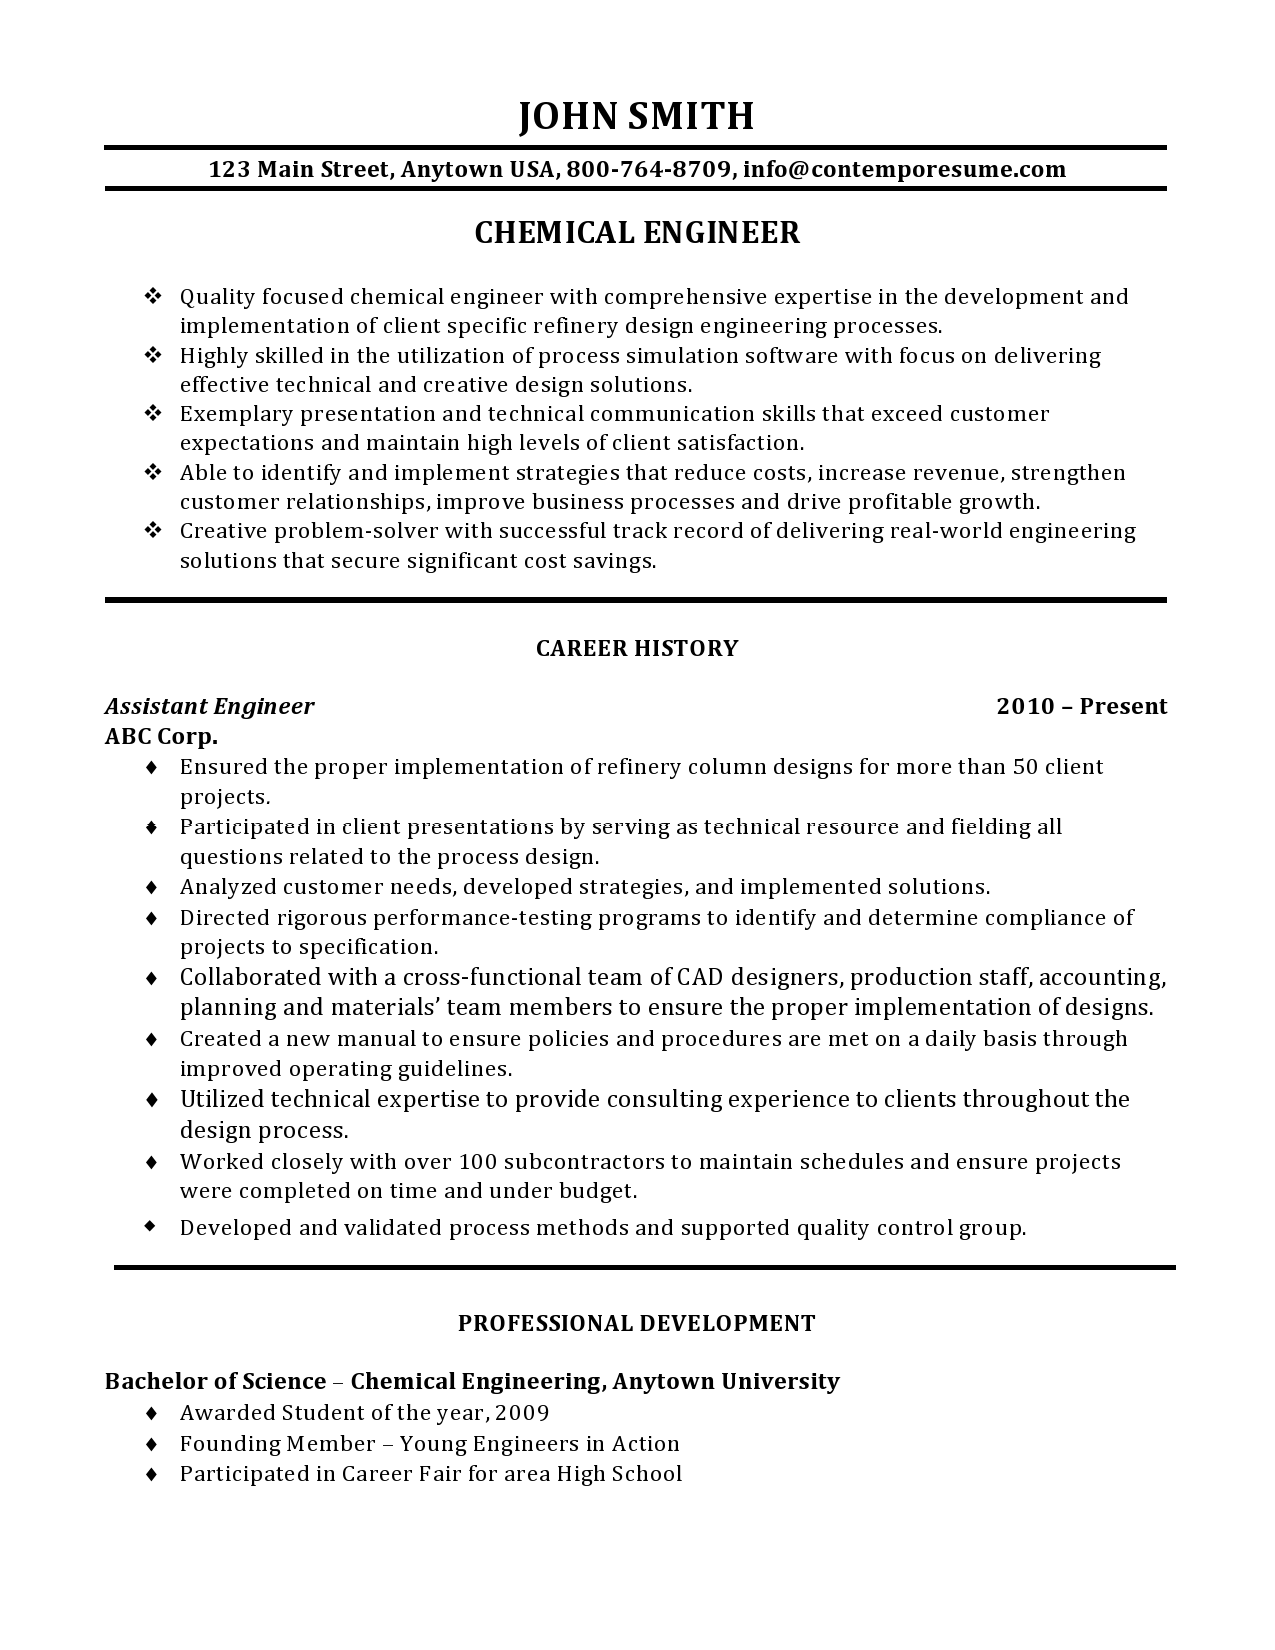 Resume chemical engineering phd